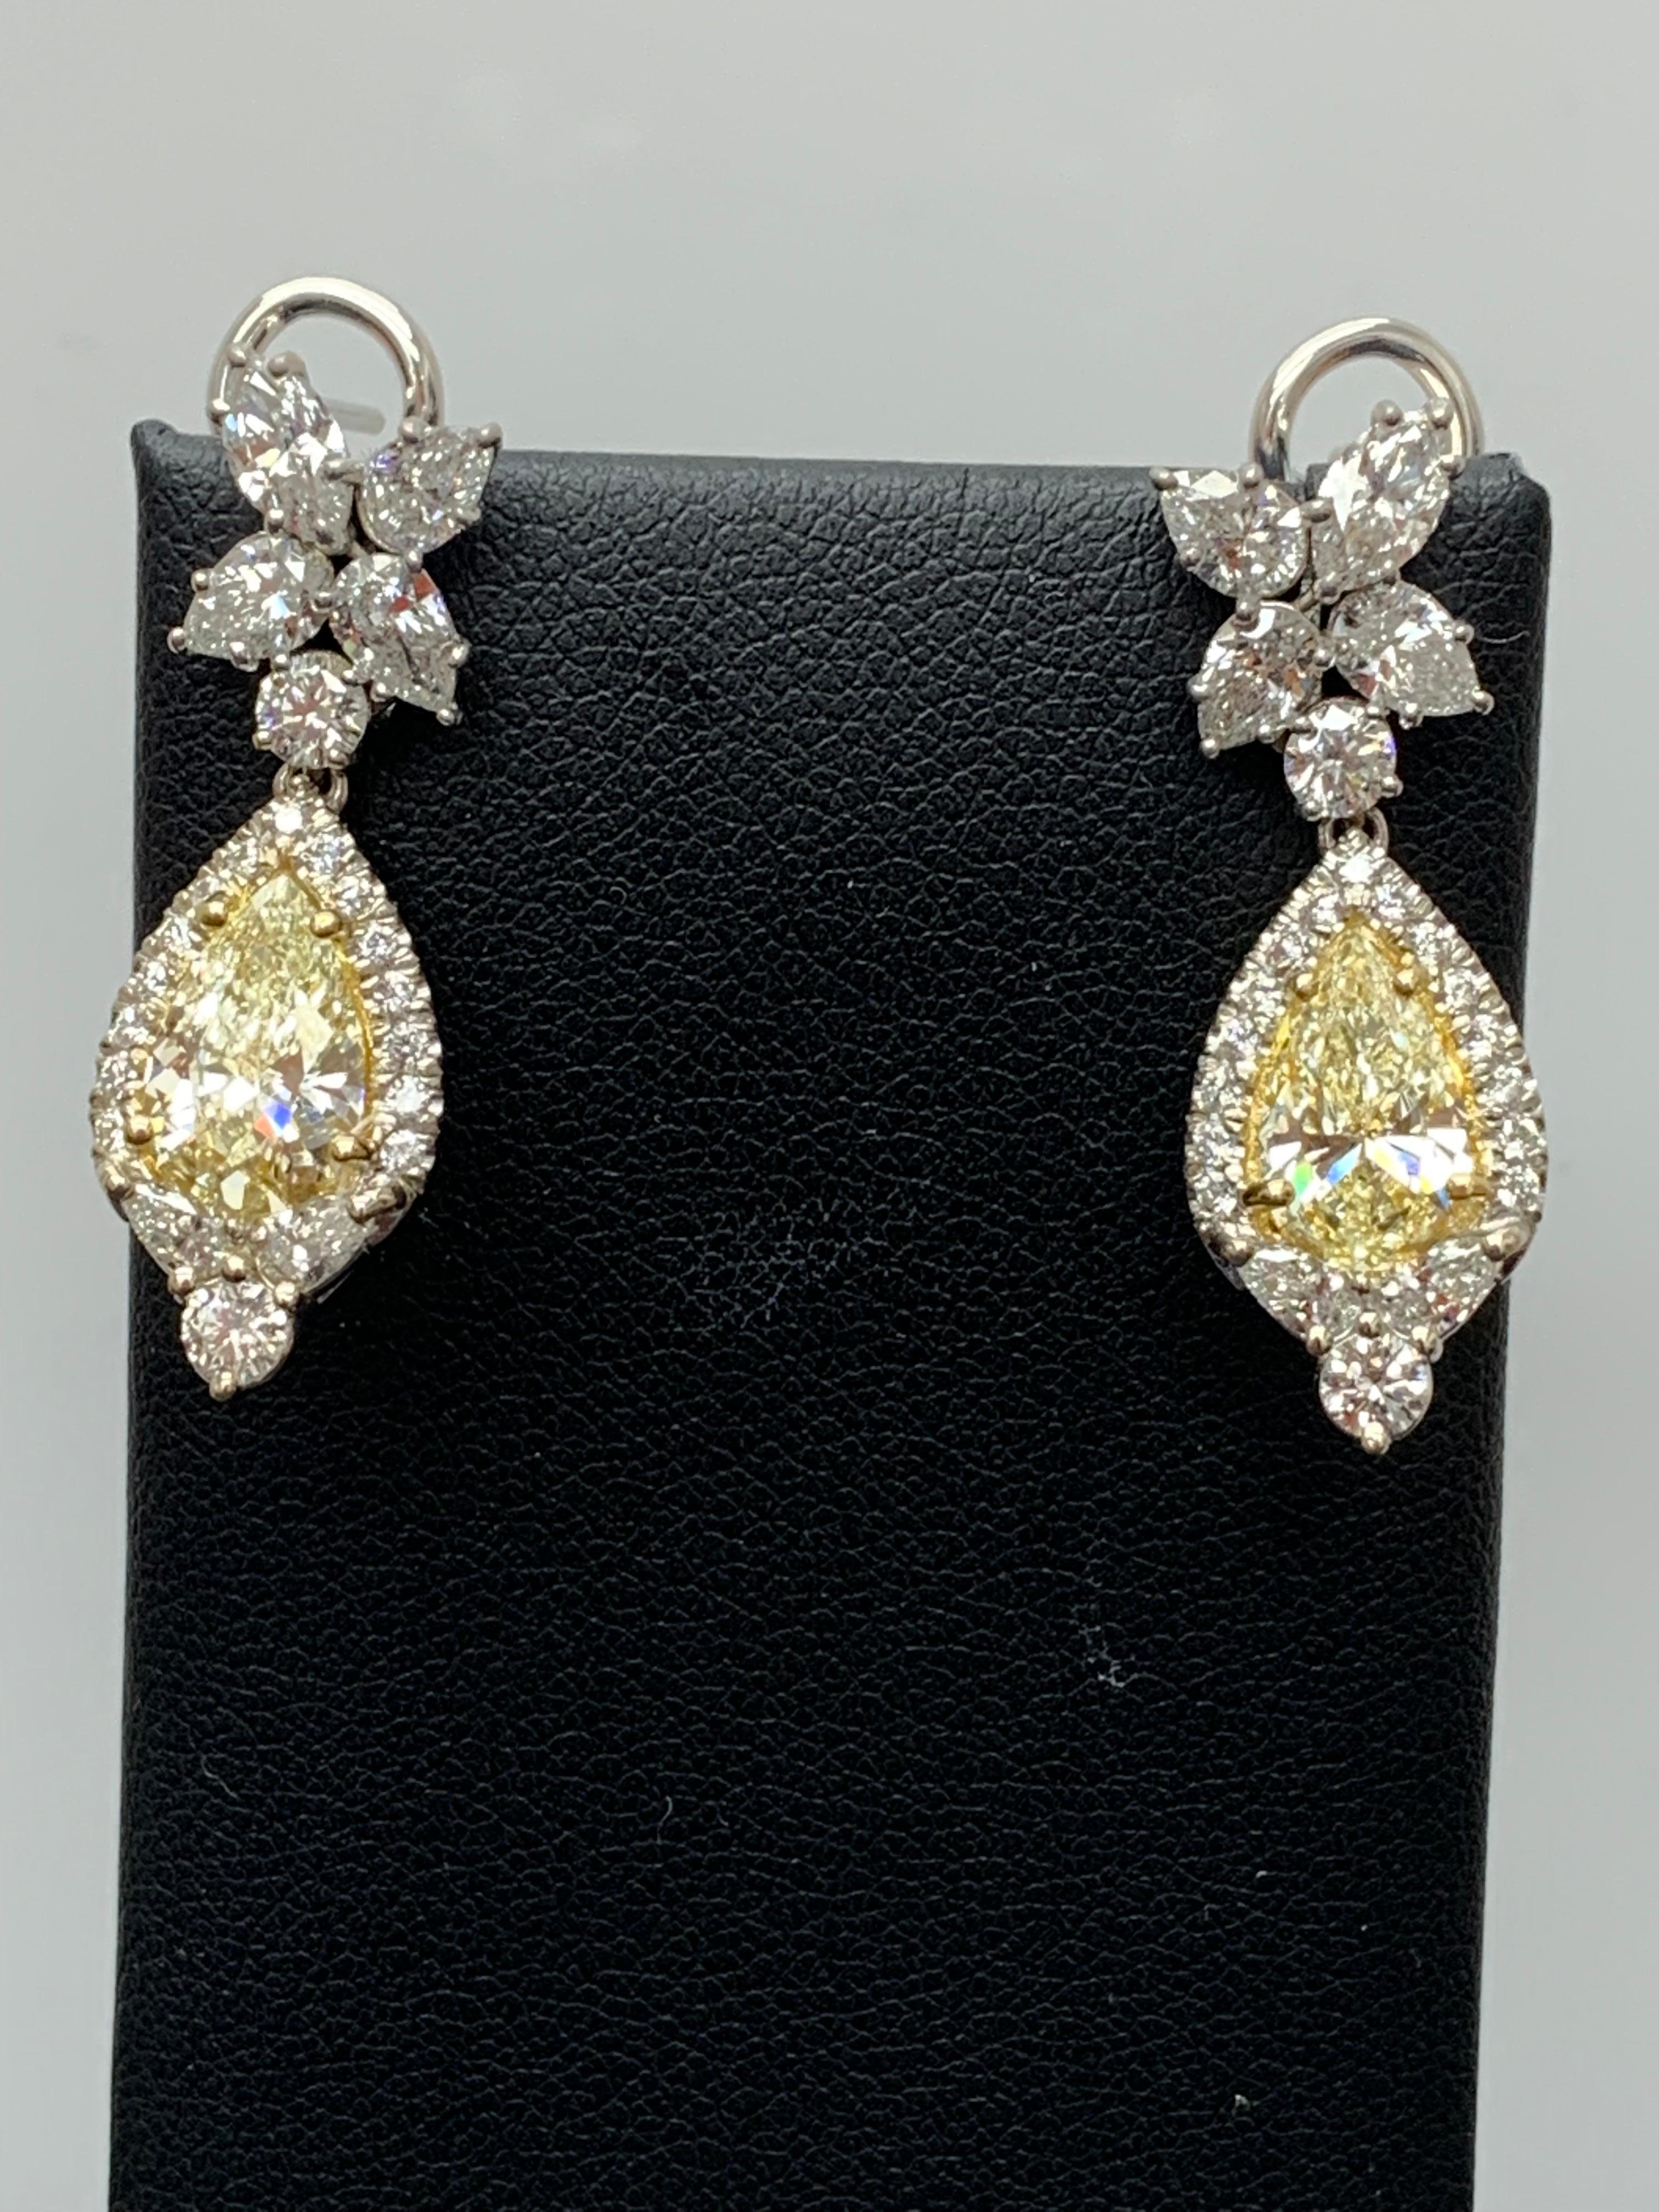 CERTIFIED 2.89 Carat Fancy Yellow Diamond Drop Earrings in 18K White Gold For Sale 2